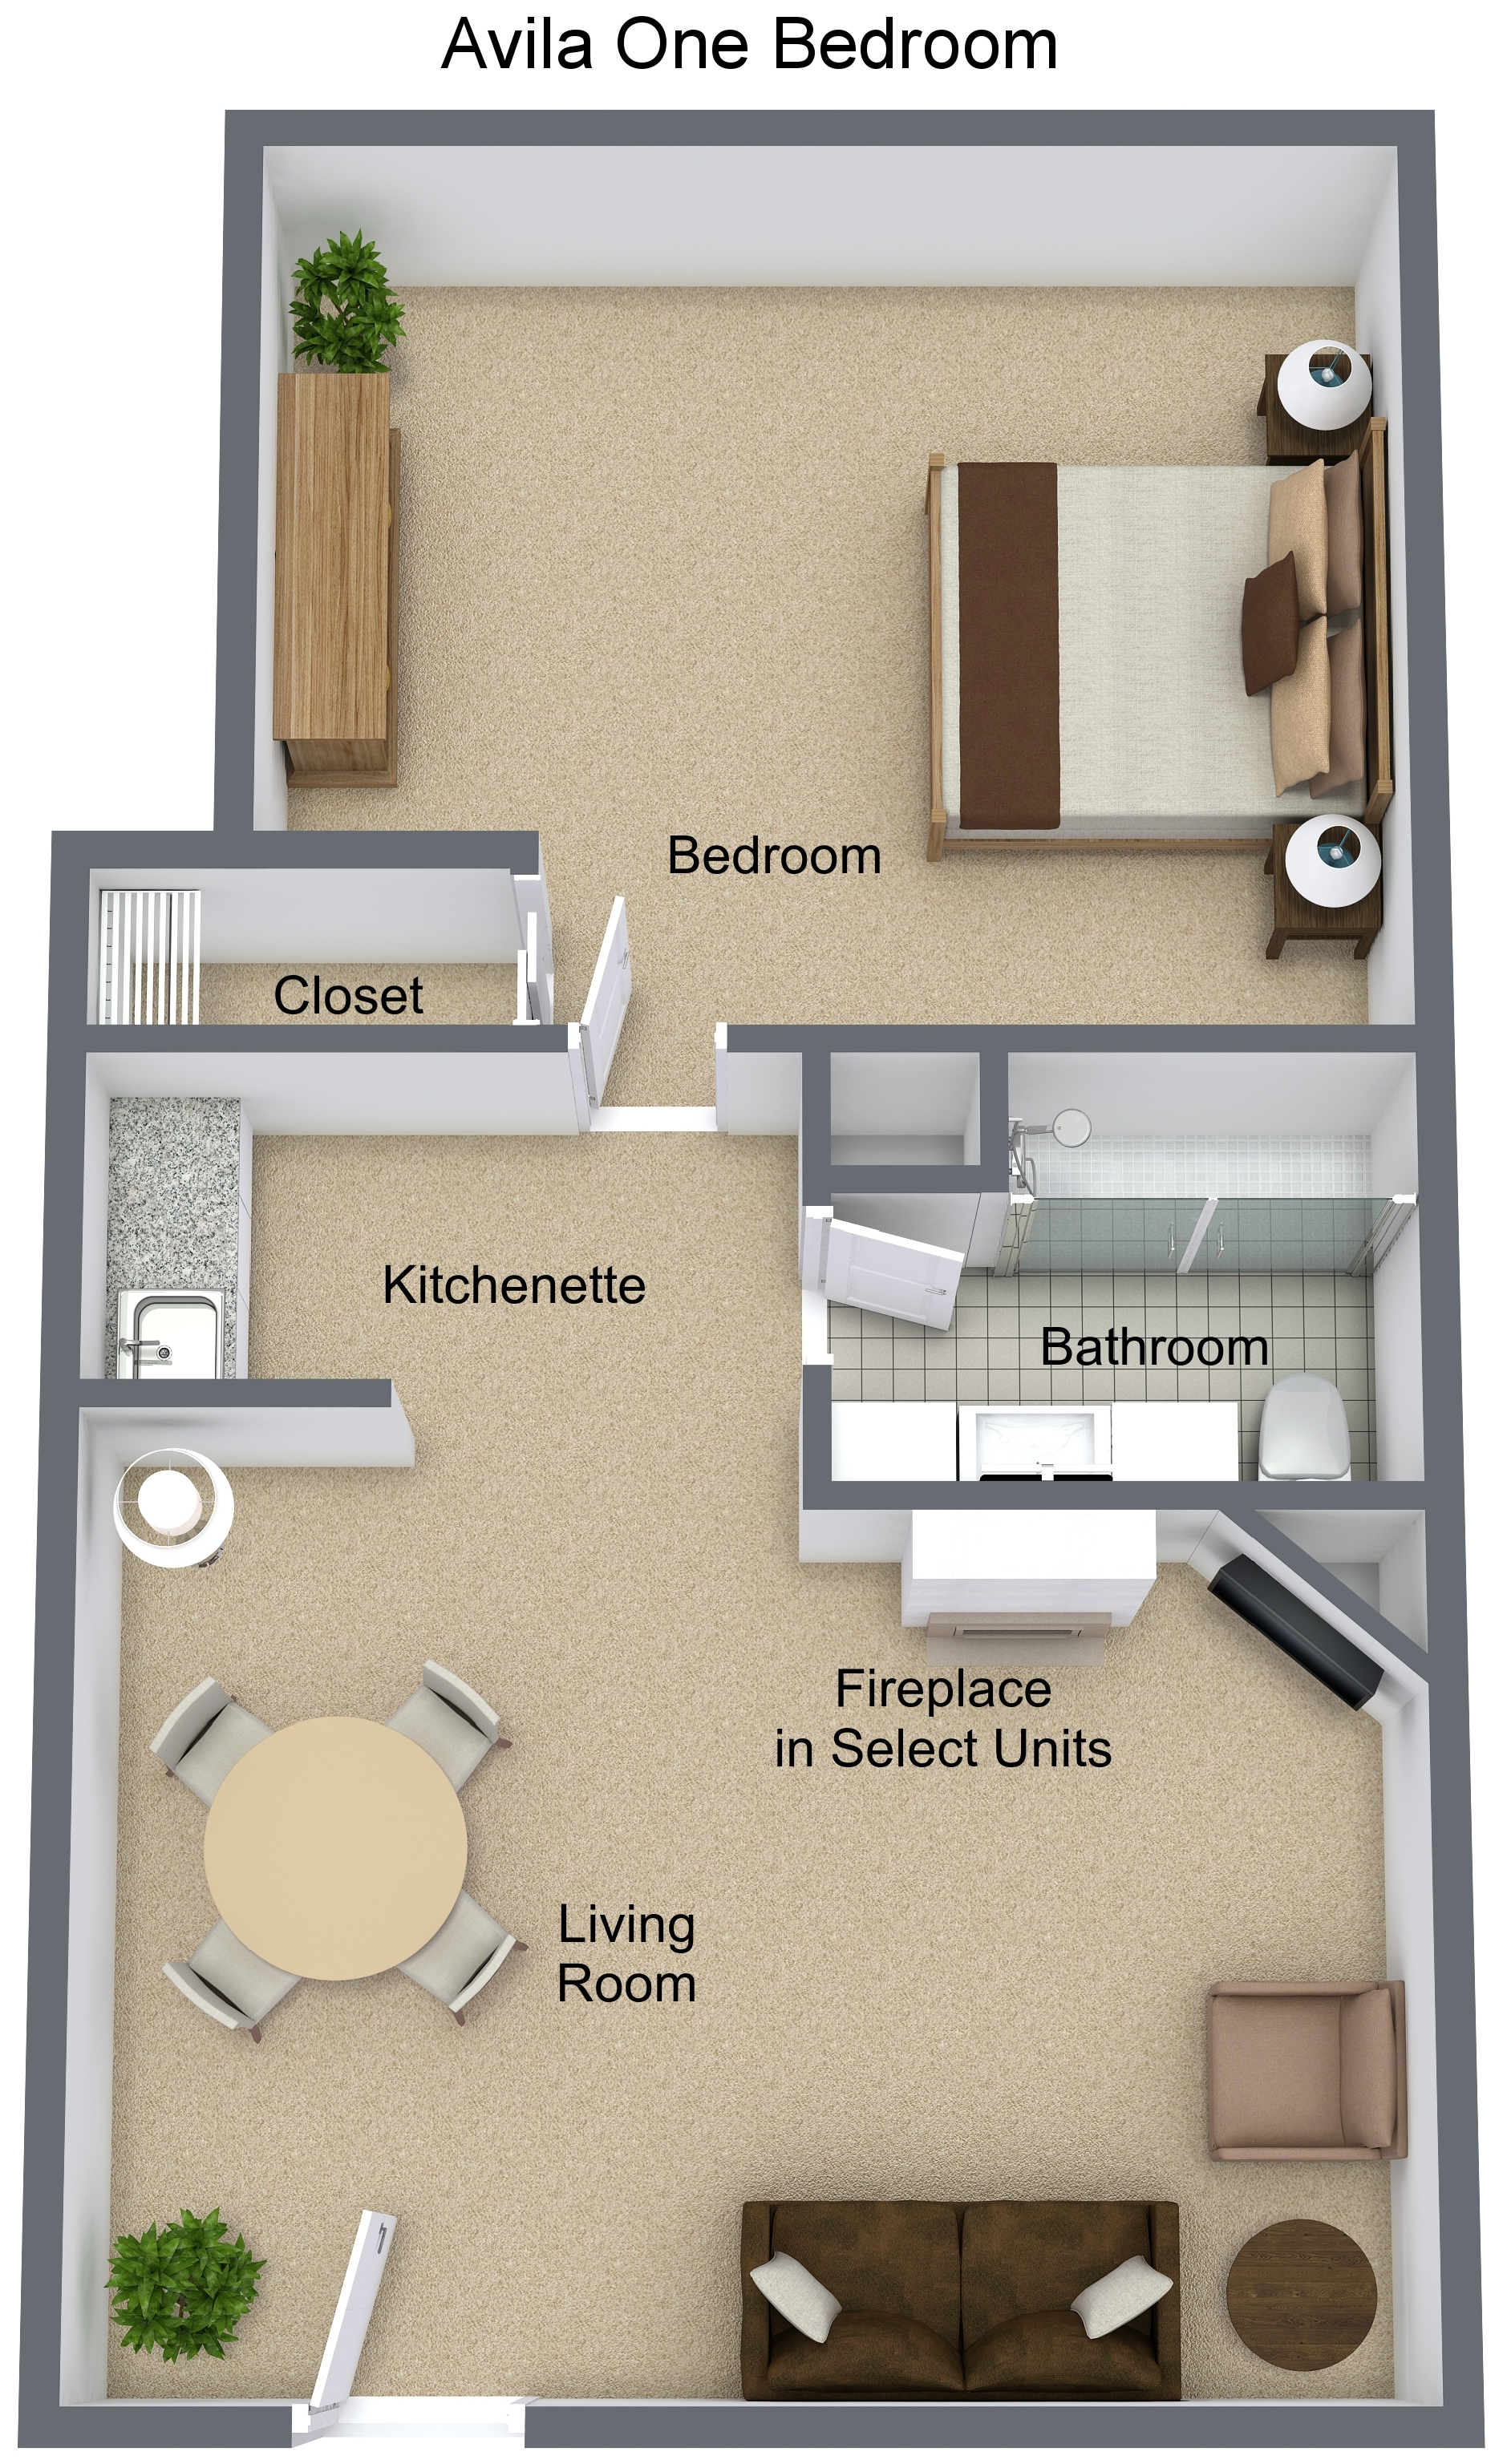 Avila_One_Bedroom_-_3D_Floor_Plan_dreea8